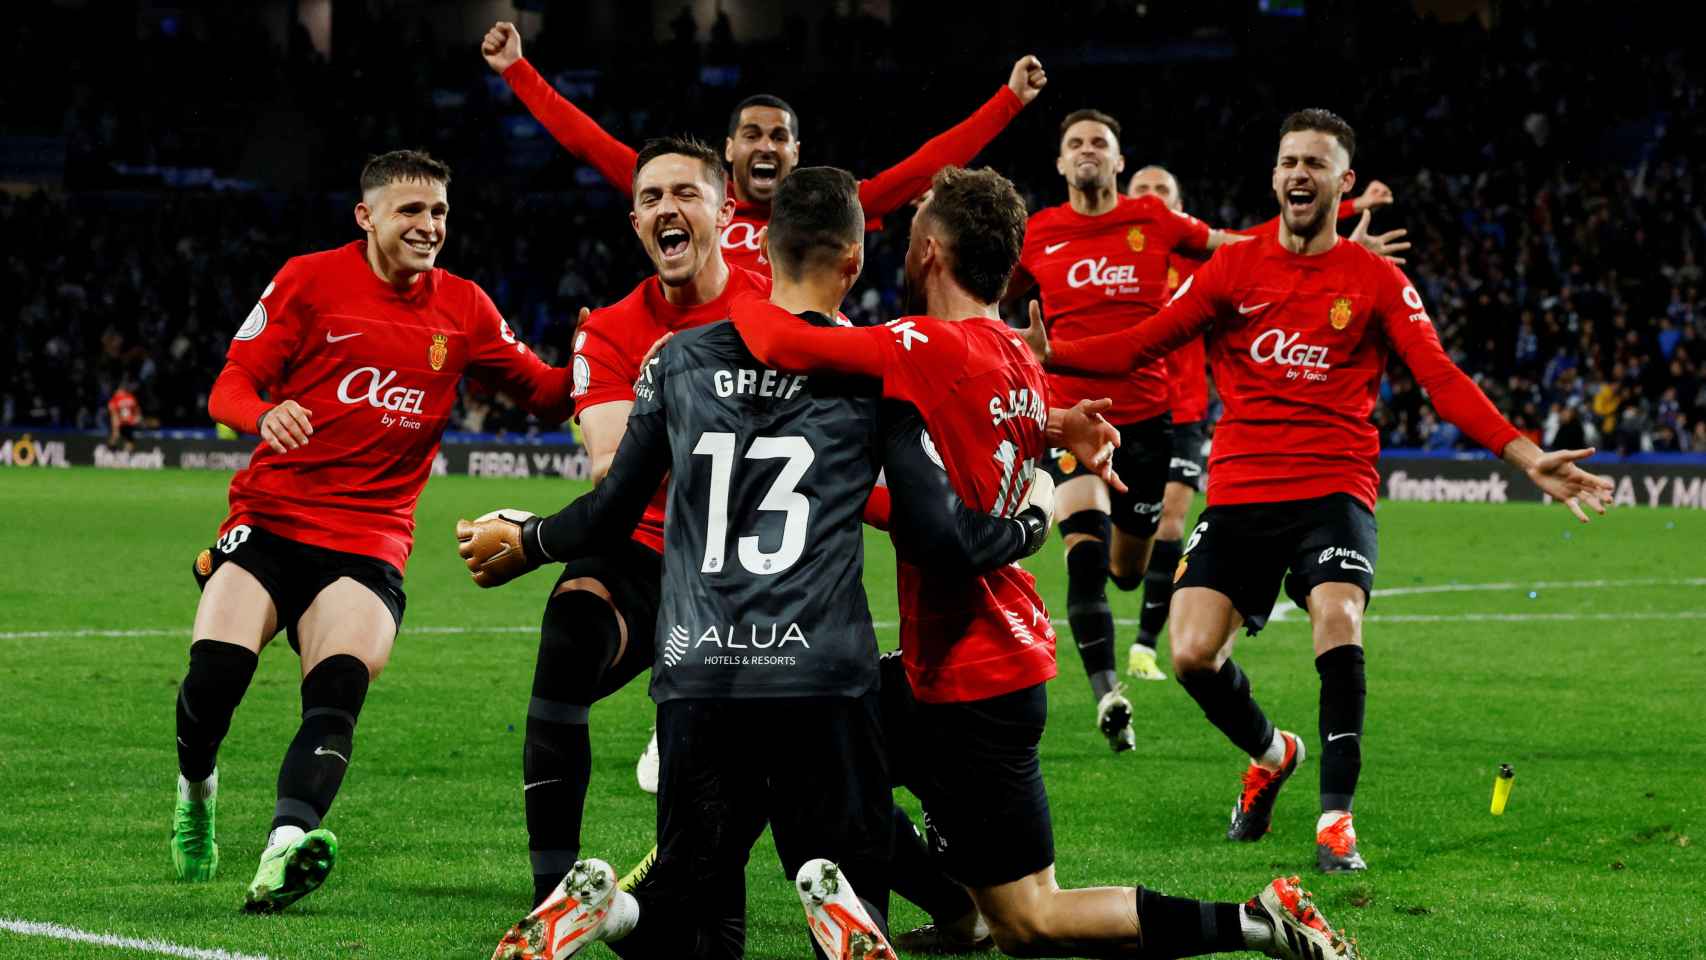 Real Sociedad - Mallorca, Copa del Rey  El penalti de Darder mete al  Mallorca en la final